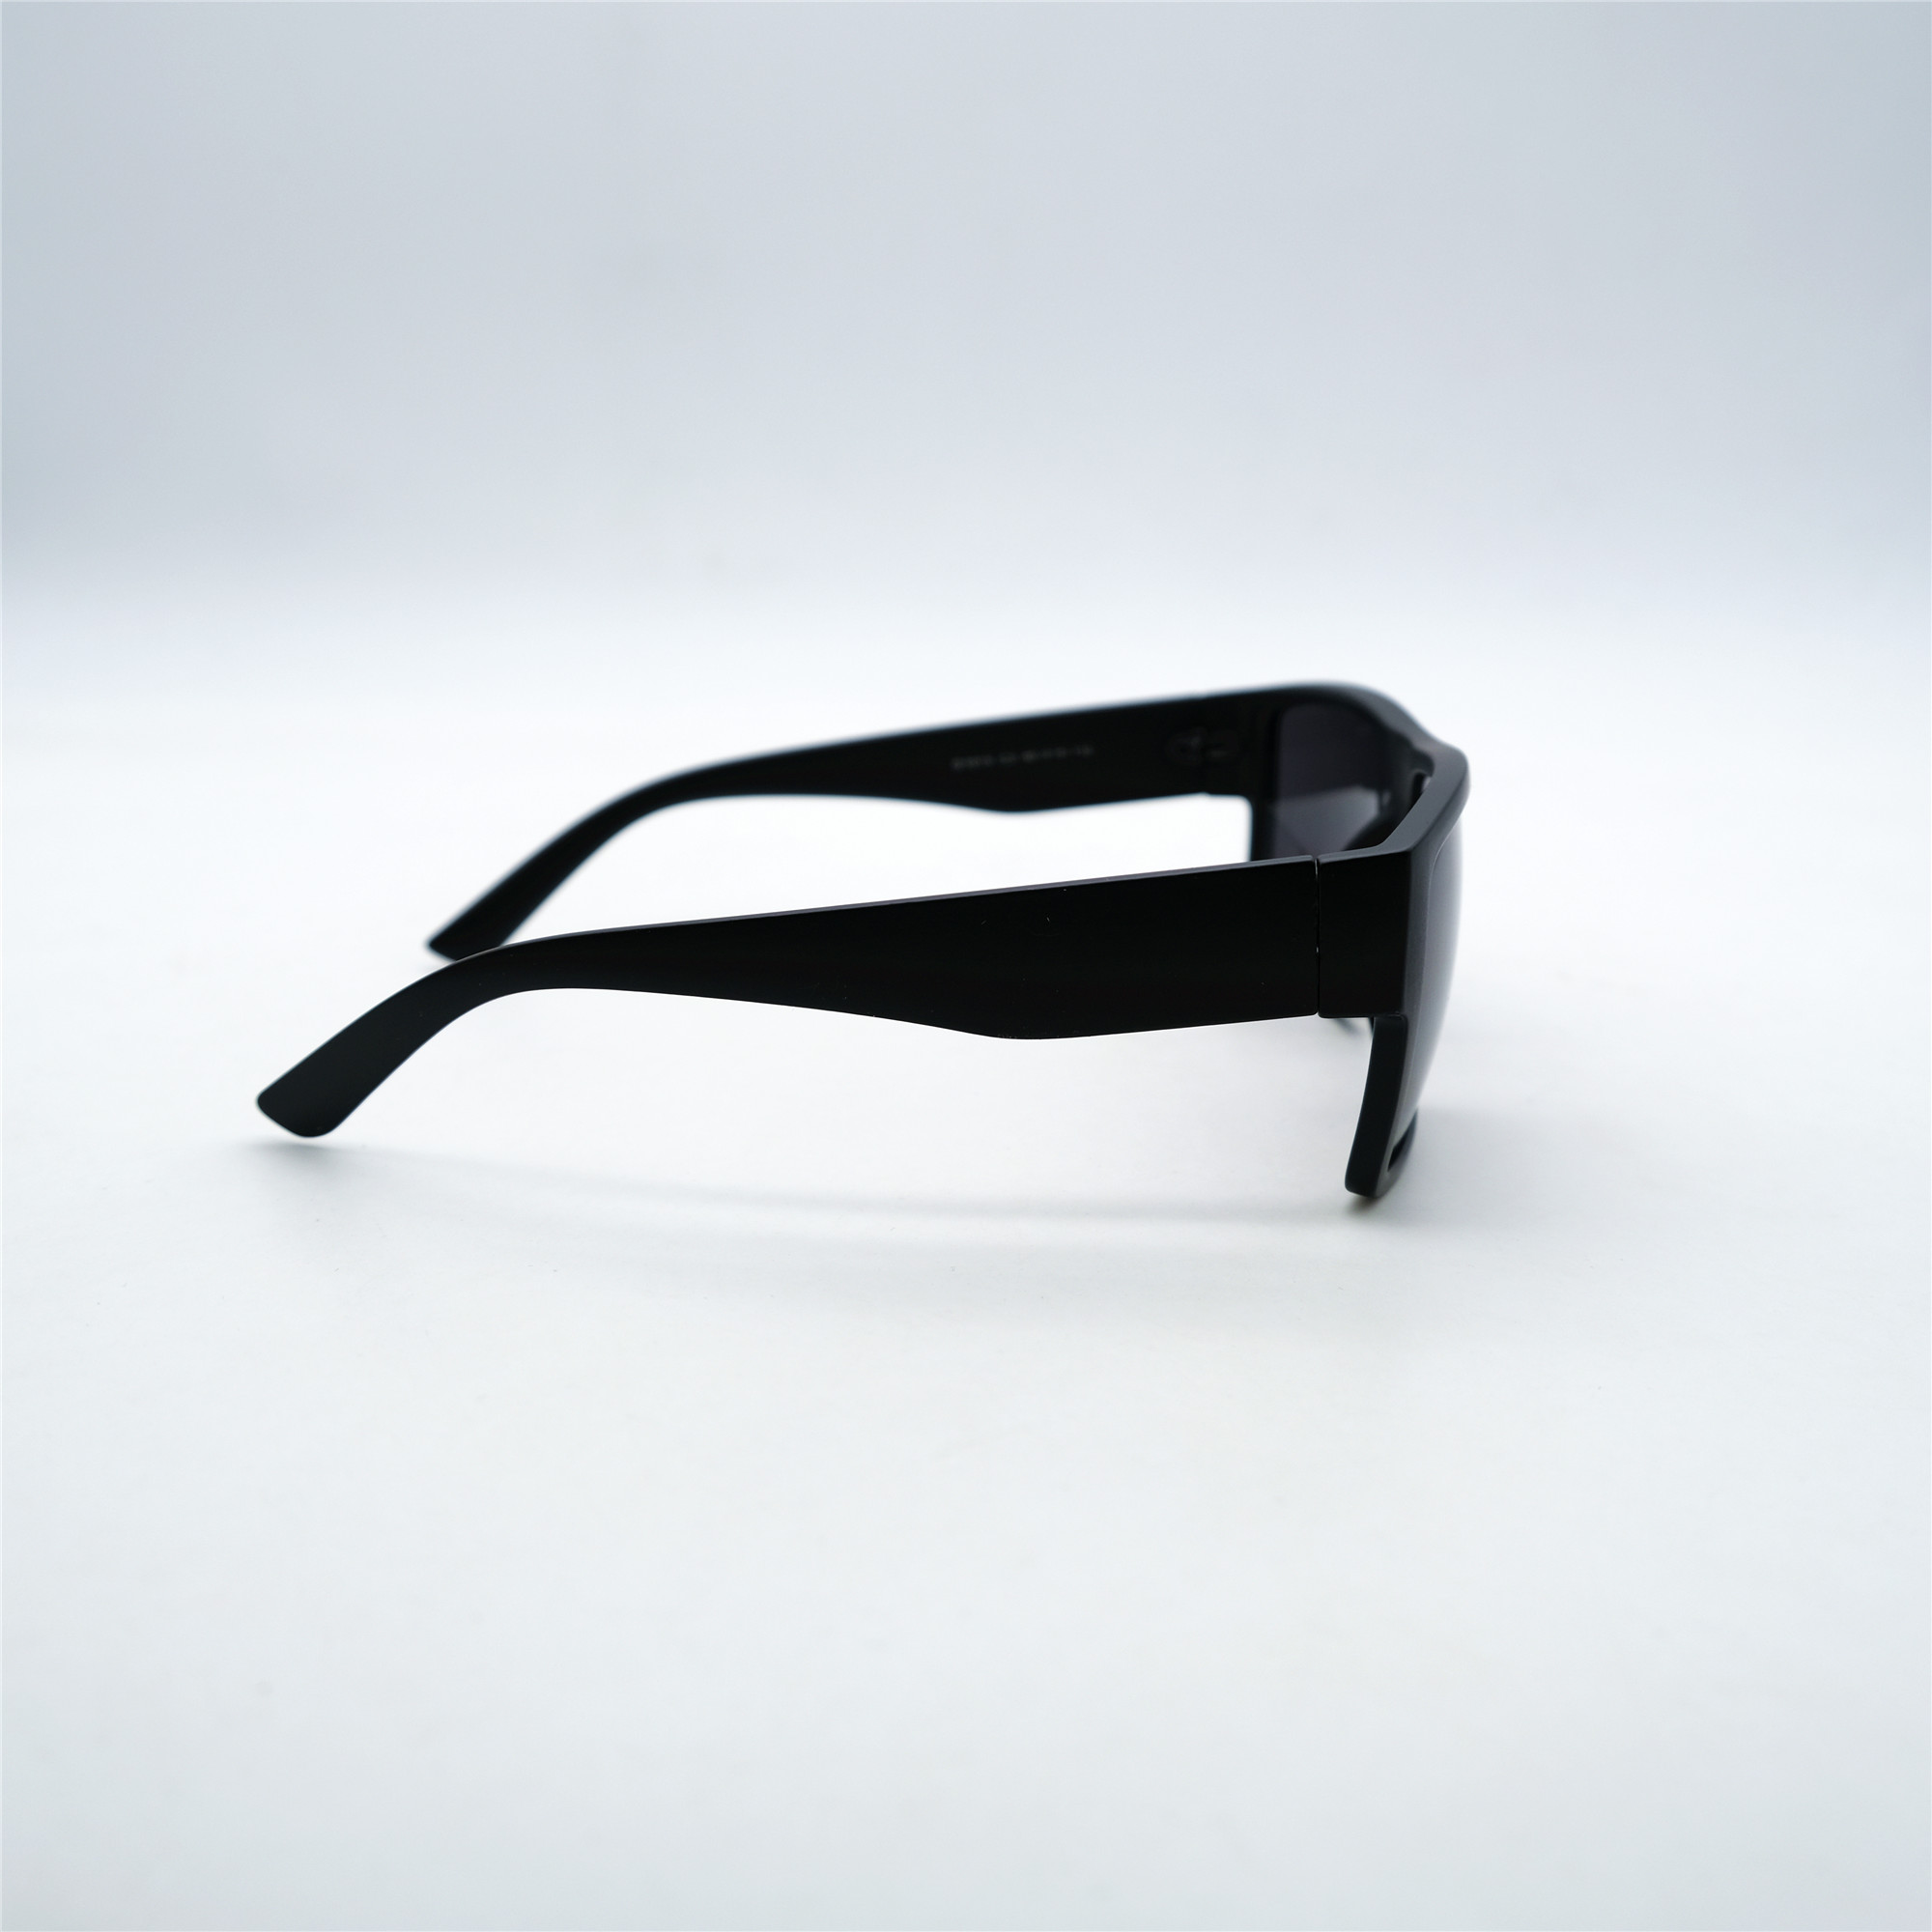  Солнцезащитные очки картинка Мужские Decorozza  Квадратные D1013-C3 